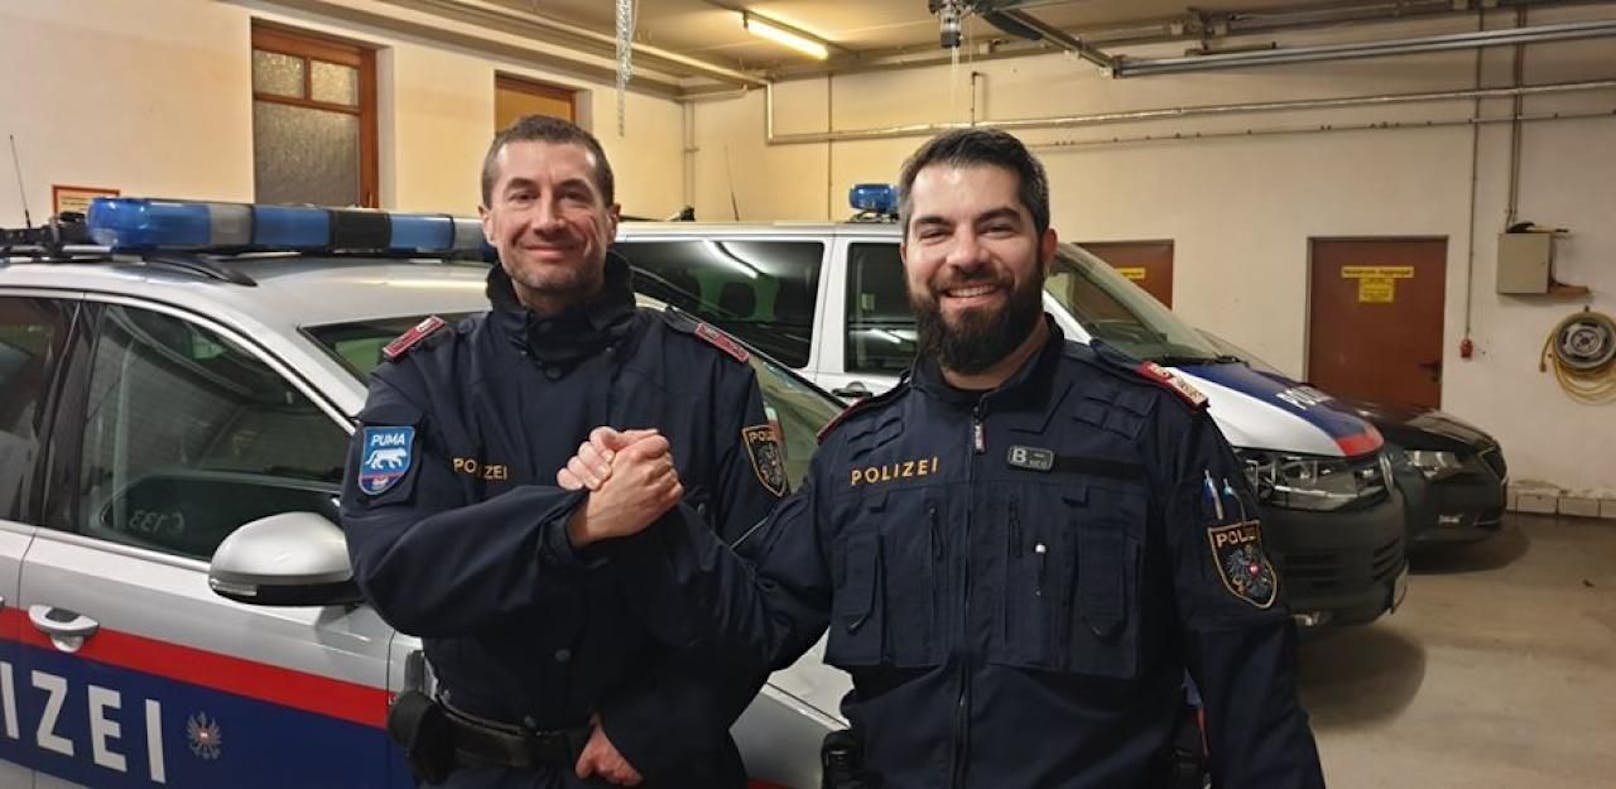 Jürgen und Michael (re.) sind jene beiden Polizisten, die dem Deutschen (84) vermutlich das Leben retteten.